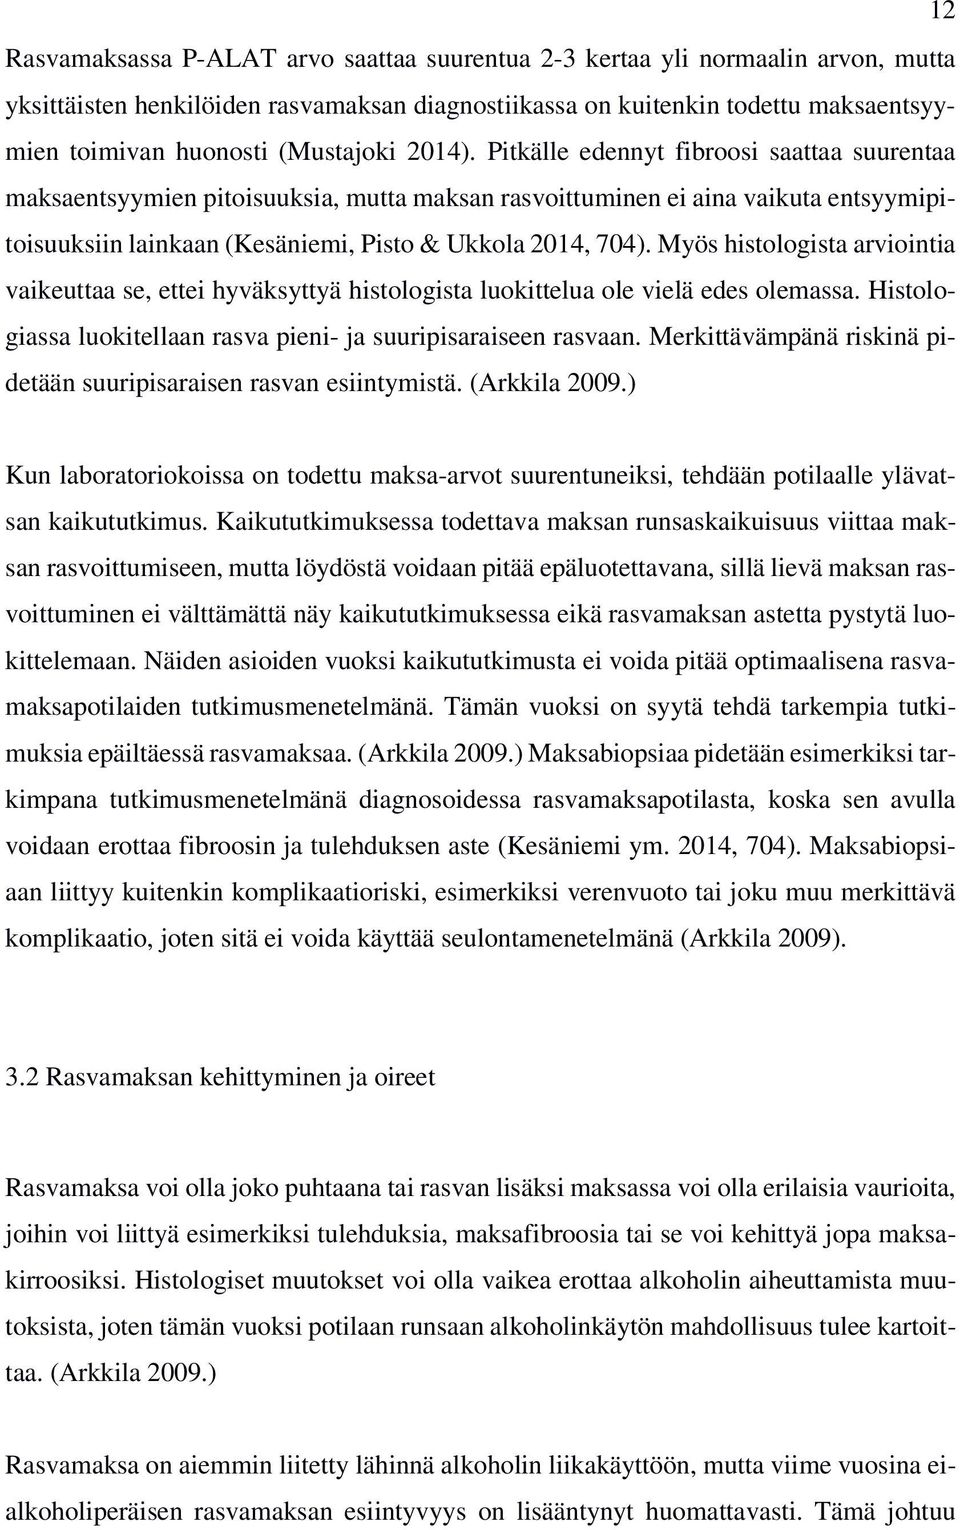 Pitkälle edennyt fibroosi saattaa suurentaa maksaentsyymien pitoisuuksia, mutta maksan rasvoittuminen ei aina vaikuta entsyymipitoisuuksiin lainkaan (Kesäniemi, Pisto & Ukkola 2014, 704).